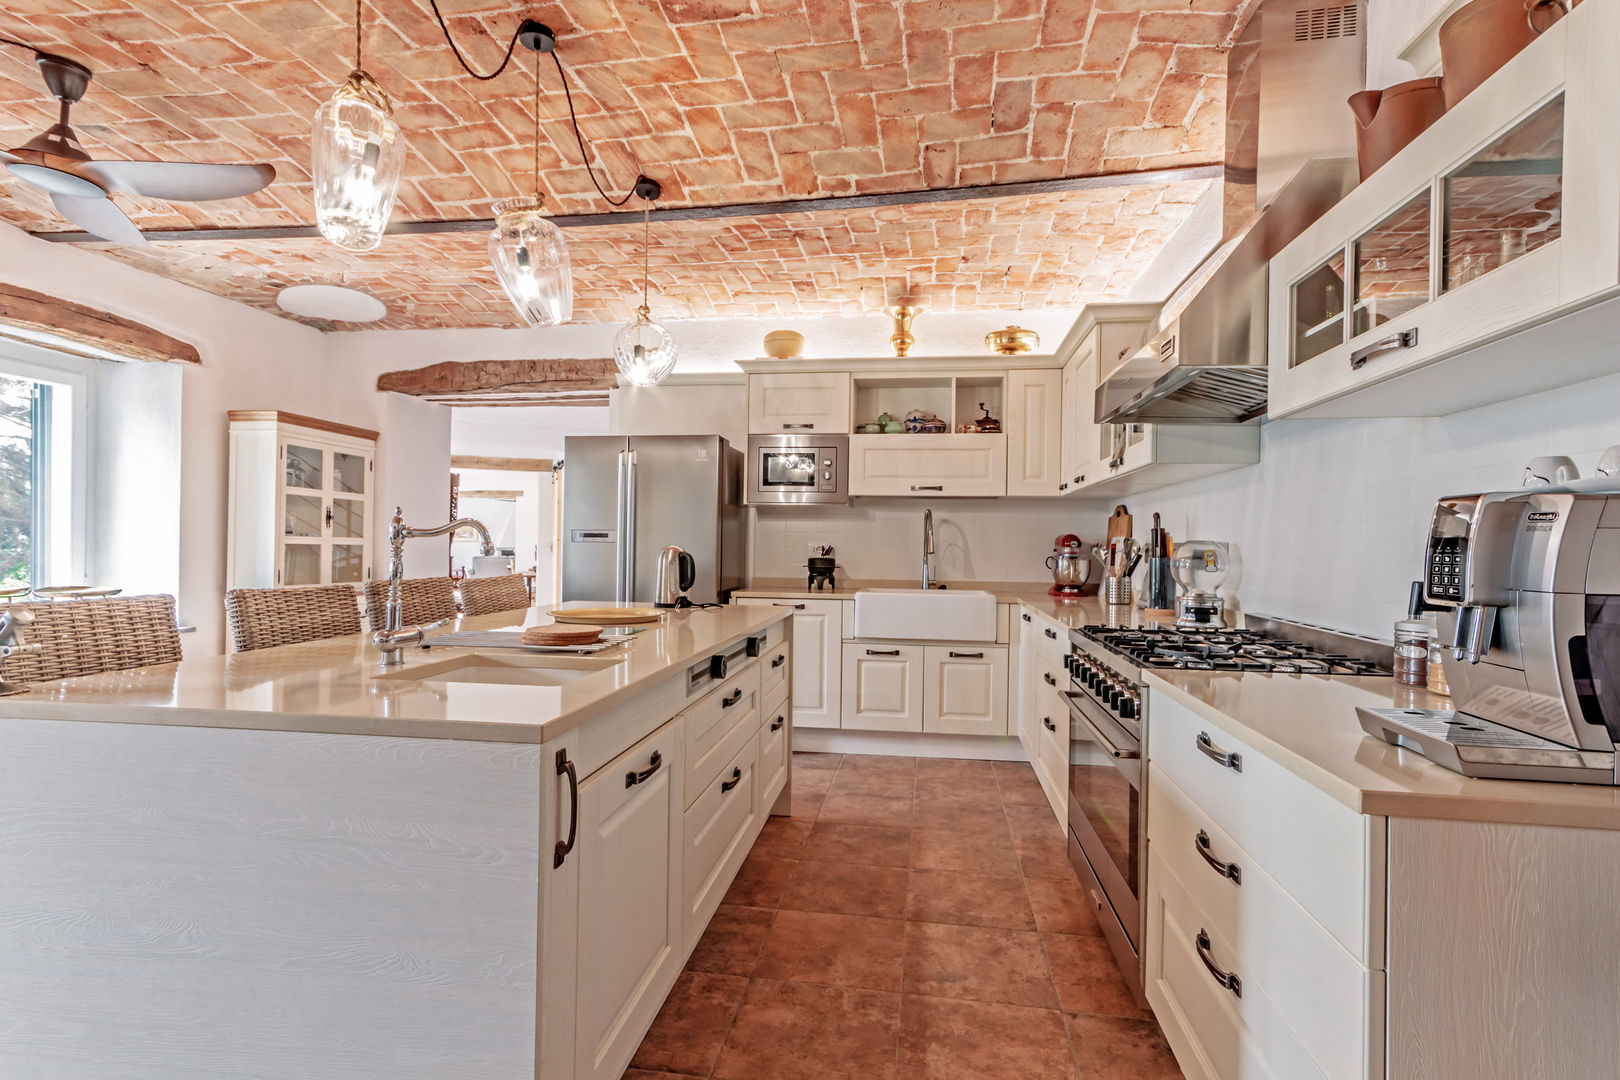 Ristrutturazione di un casale nelle colline del Monferrato, Vivere lo Stile Vivere lo Stile Rustic style kitchen